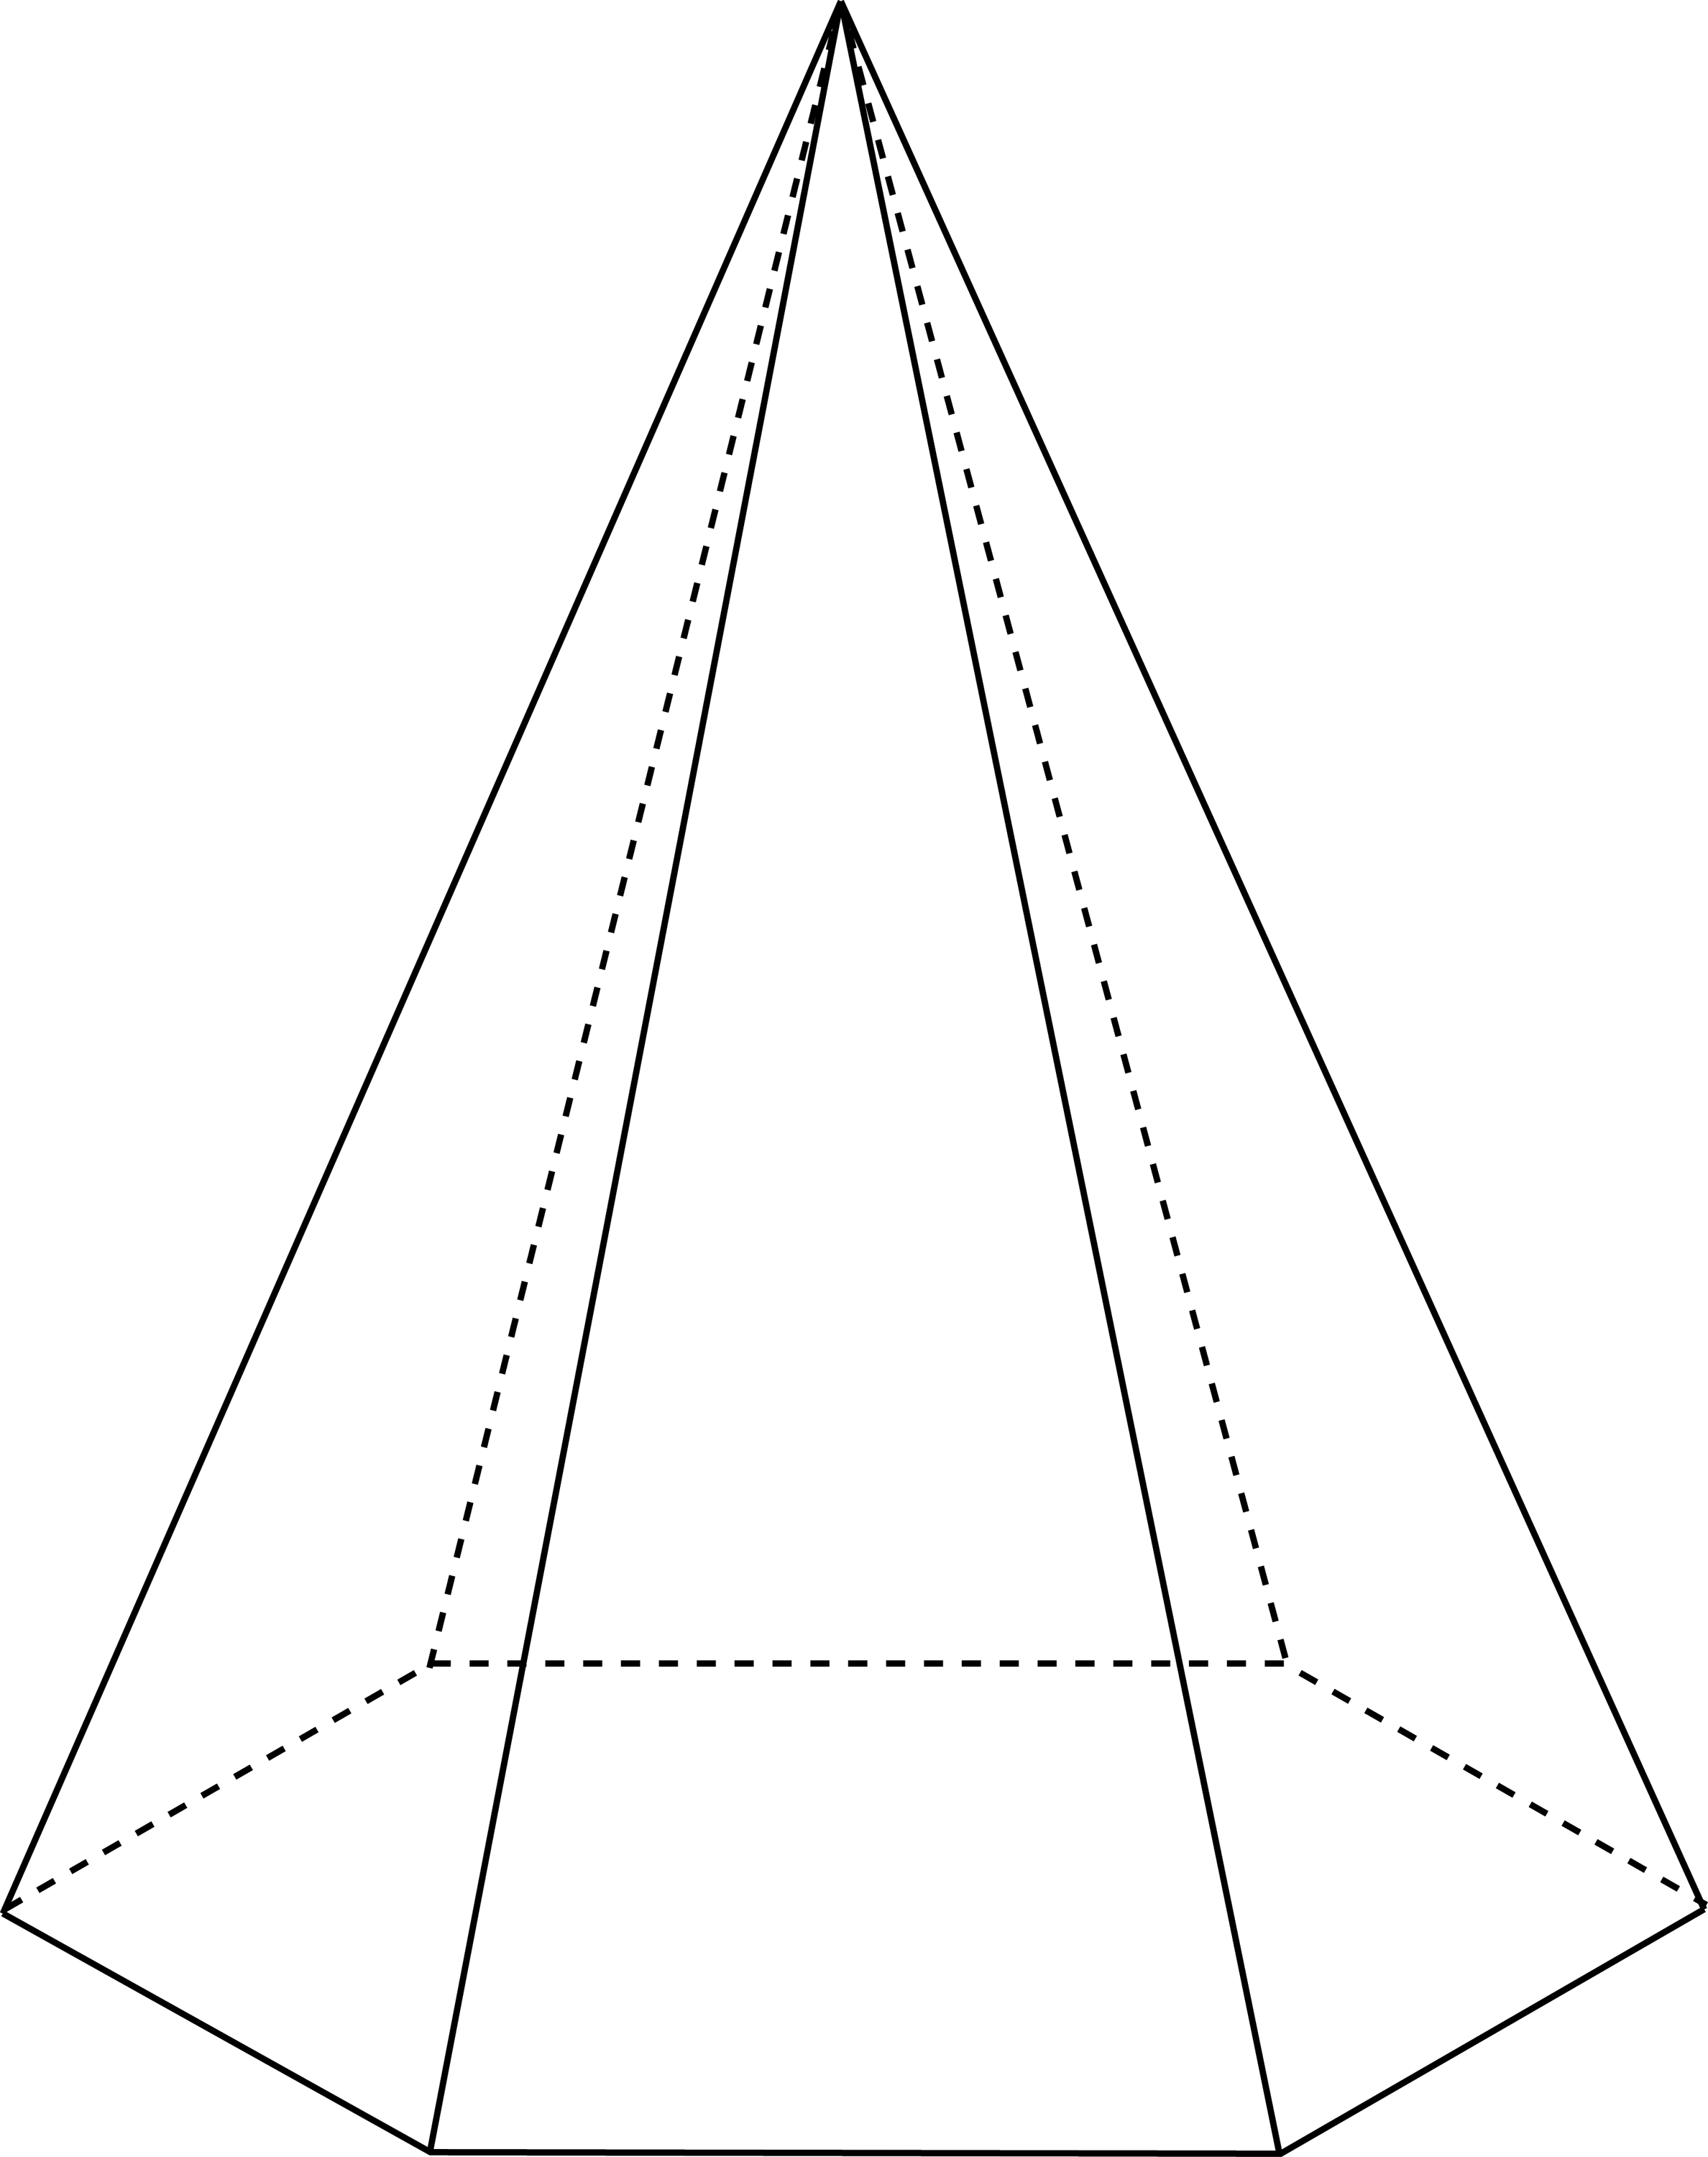 Правильная шестиугольная пирамида